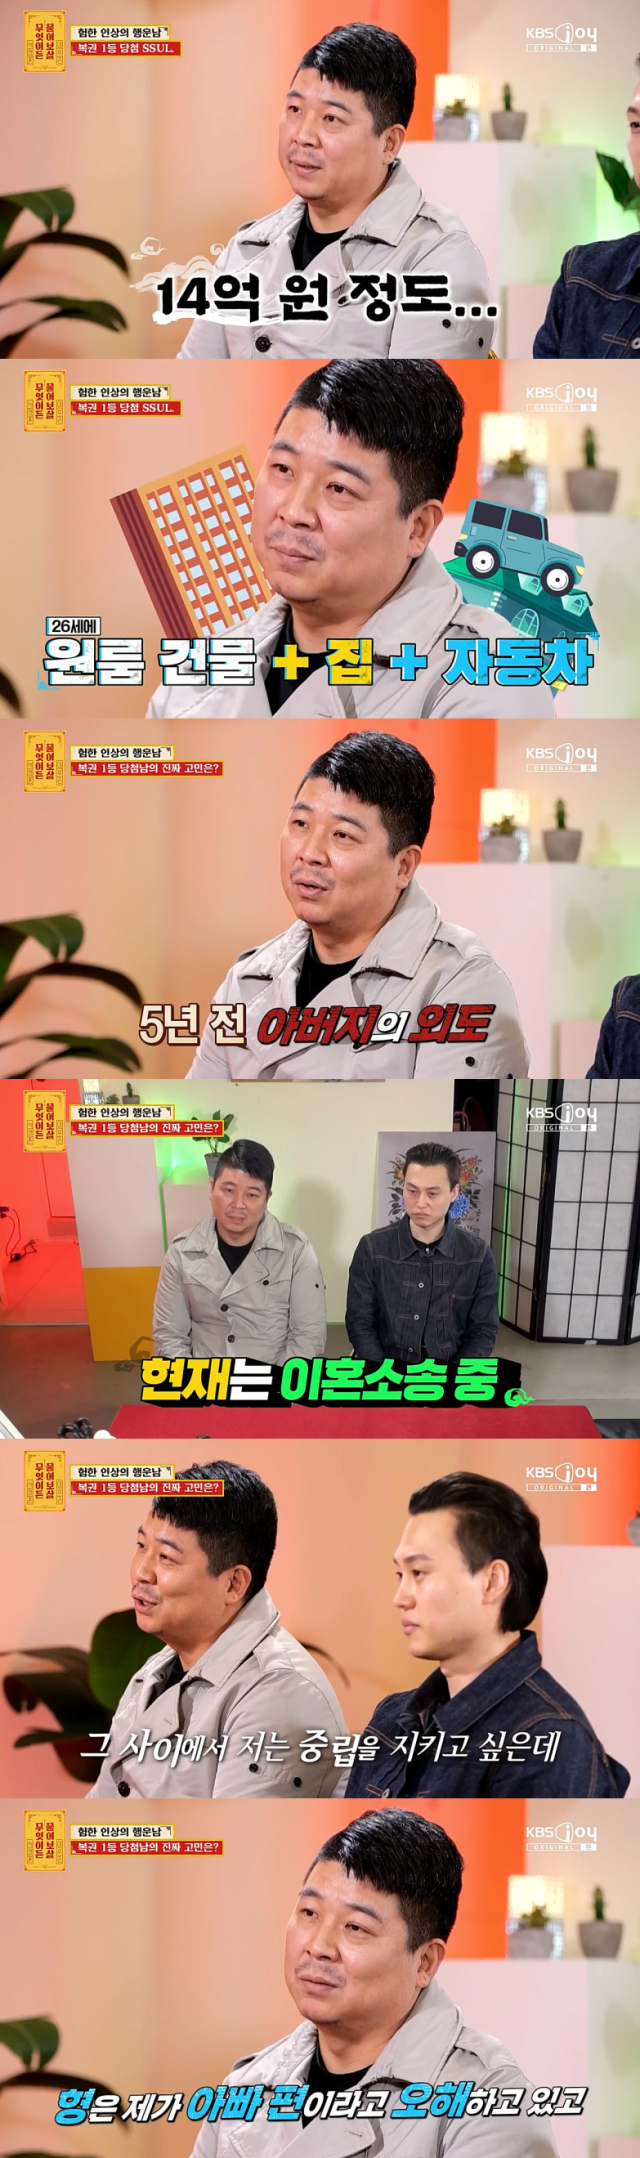 고민을 공개한 복권 1등 당첨남./케이블채널 KBS Joy 예능프로그램 